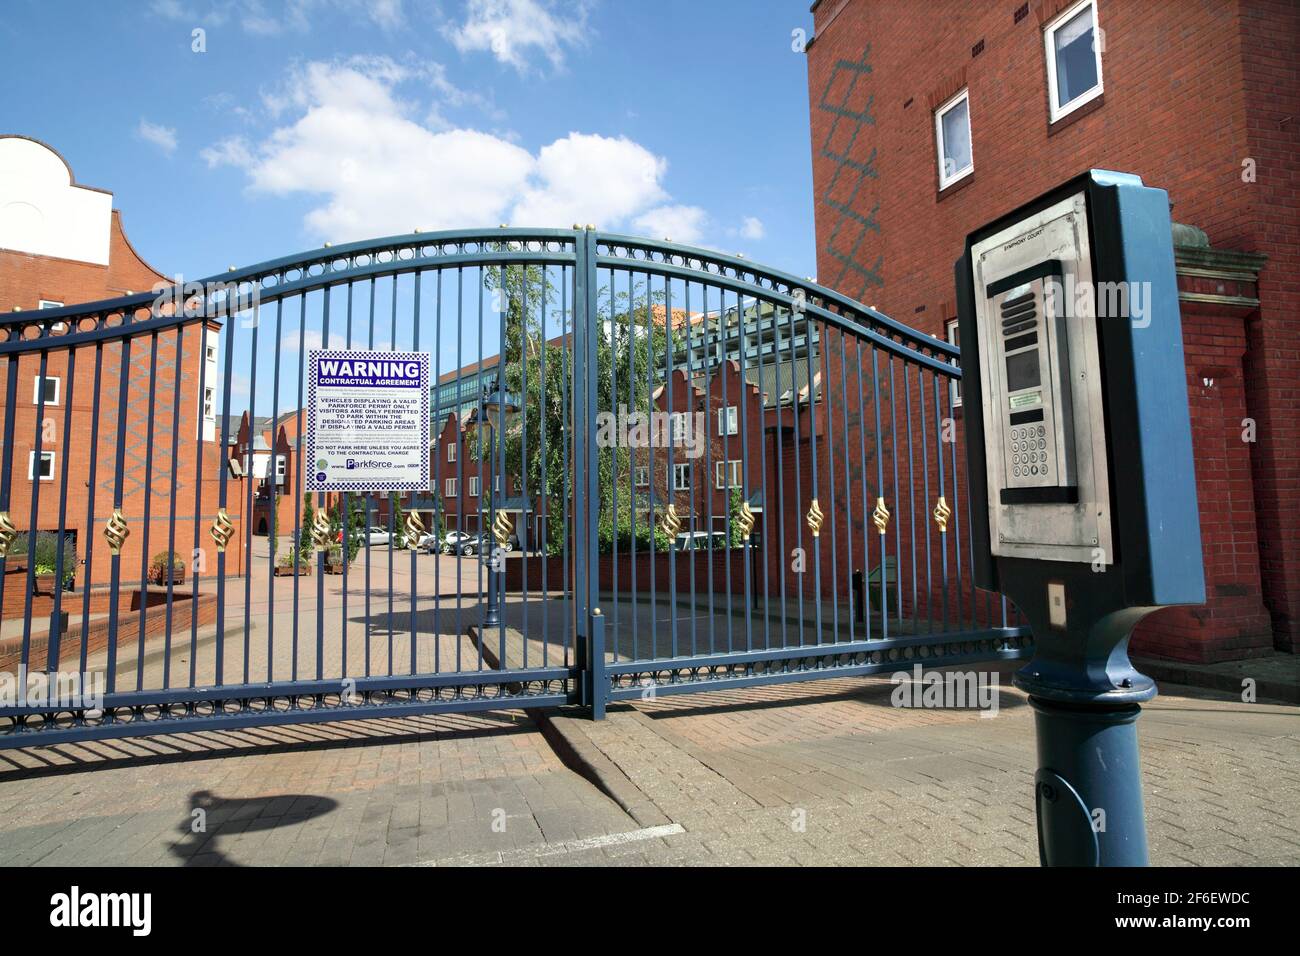 Puertas de seguridad a la entrada de la Corte Sinfónica, Birmingham, una comunidad cerrada de nuevas casas y pisos cerca del centro de la ciudad. Foto de stock